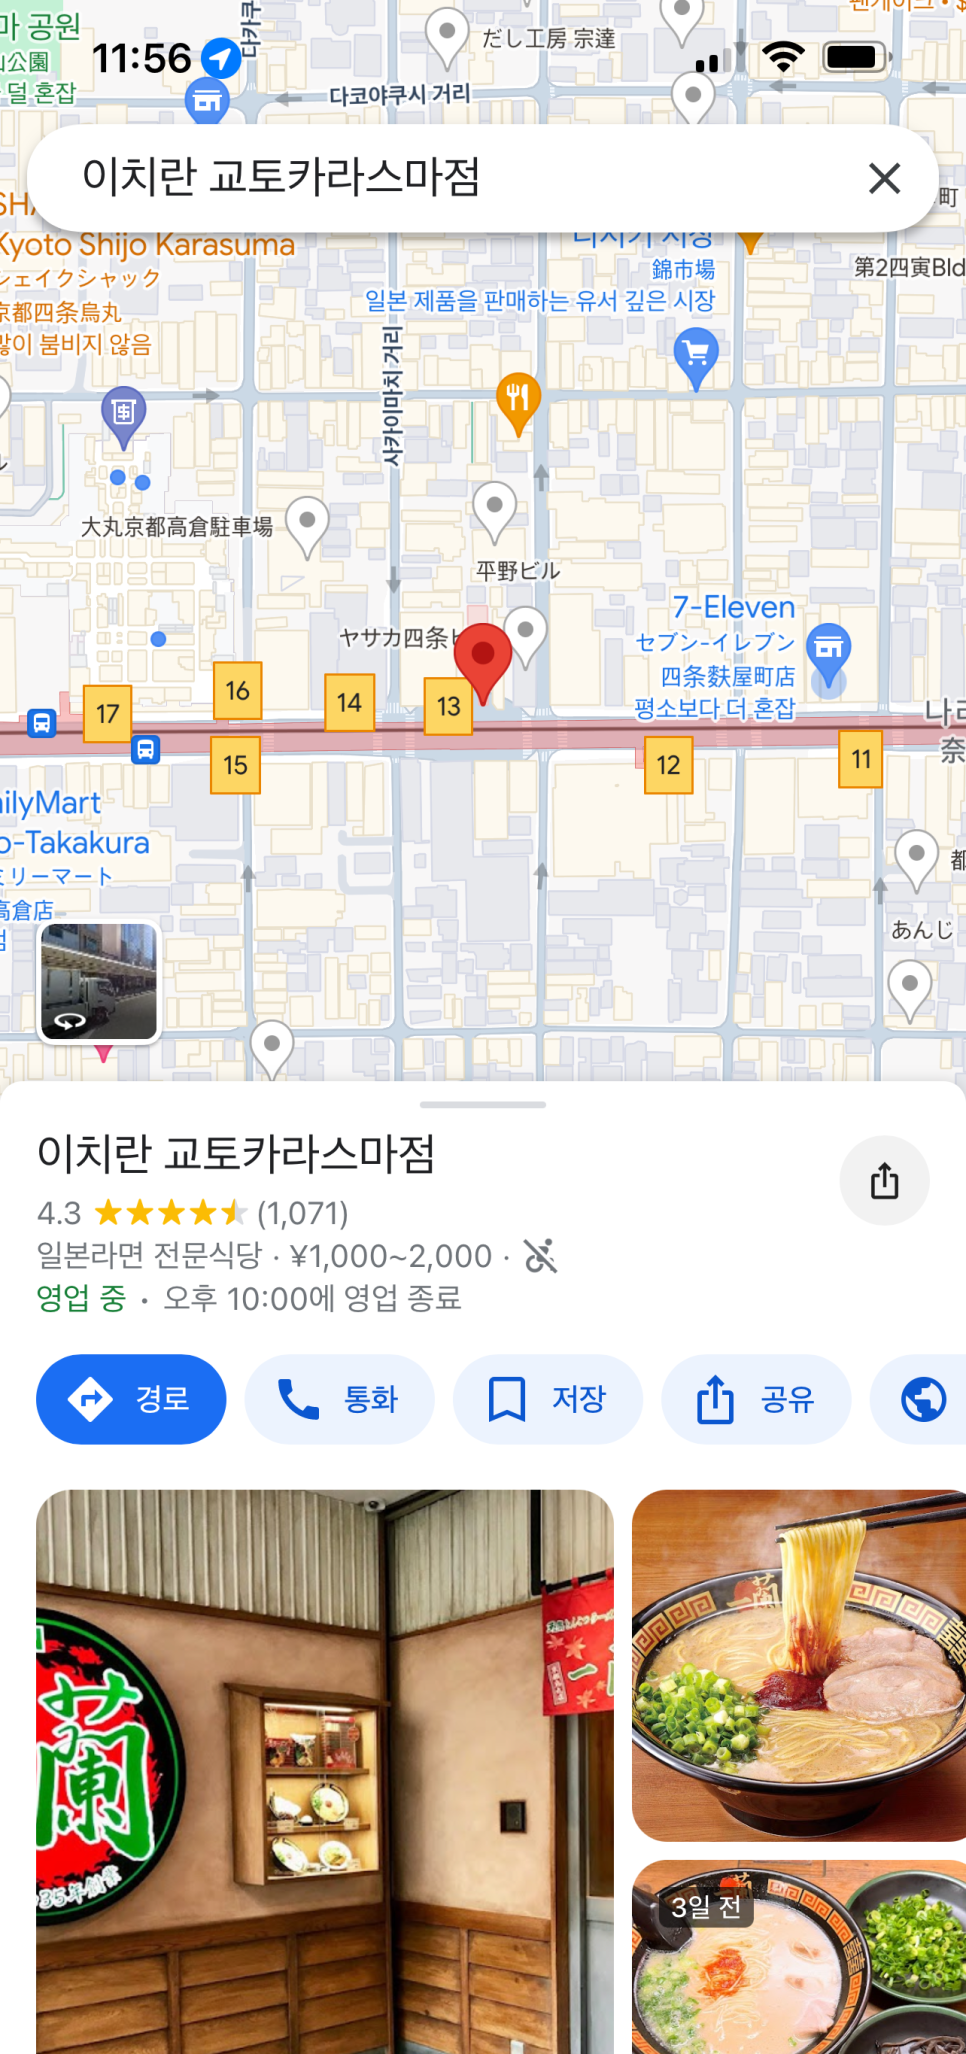 교토 맛집 이치란라멘 카라스마점 웨이팅 X 맵기 추천 레시피